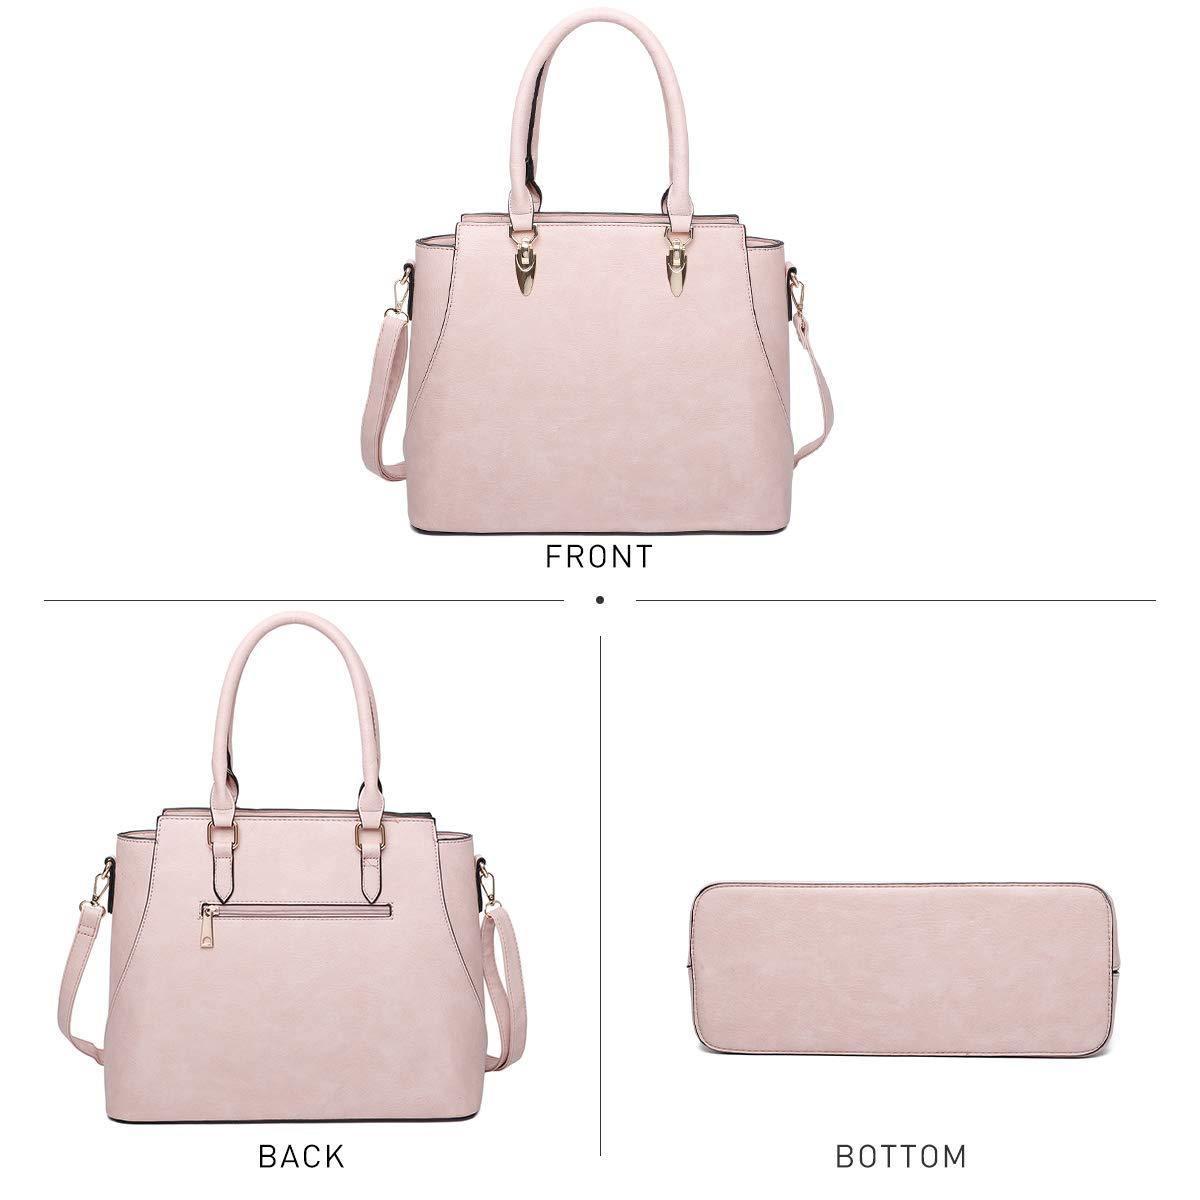 Who else loves top handle bags : r/handbags